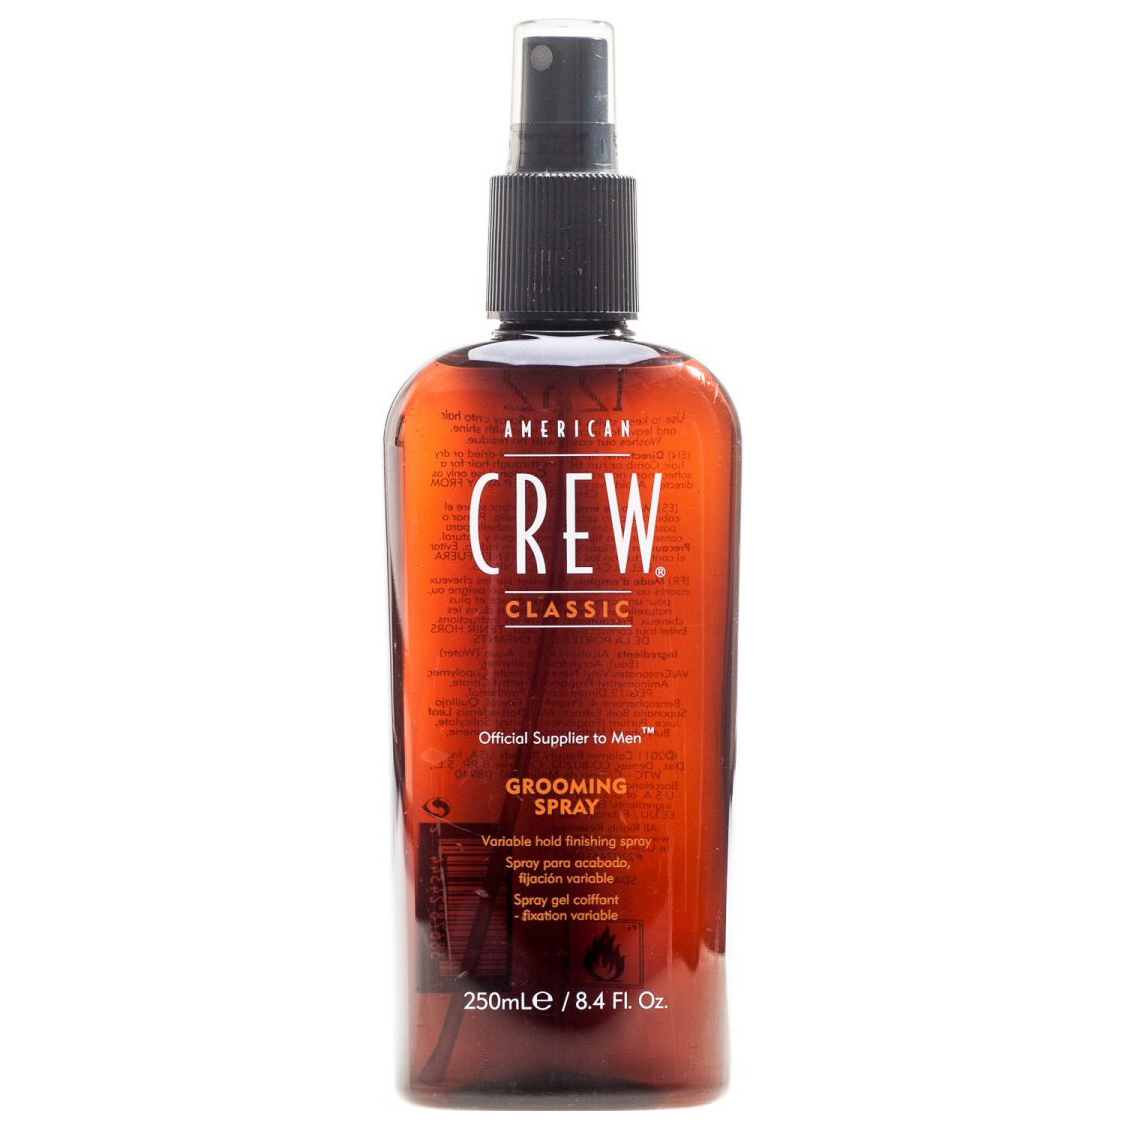 Купить Спрей для финальной укладки волос American Crew Grooming Spray, 250 мл